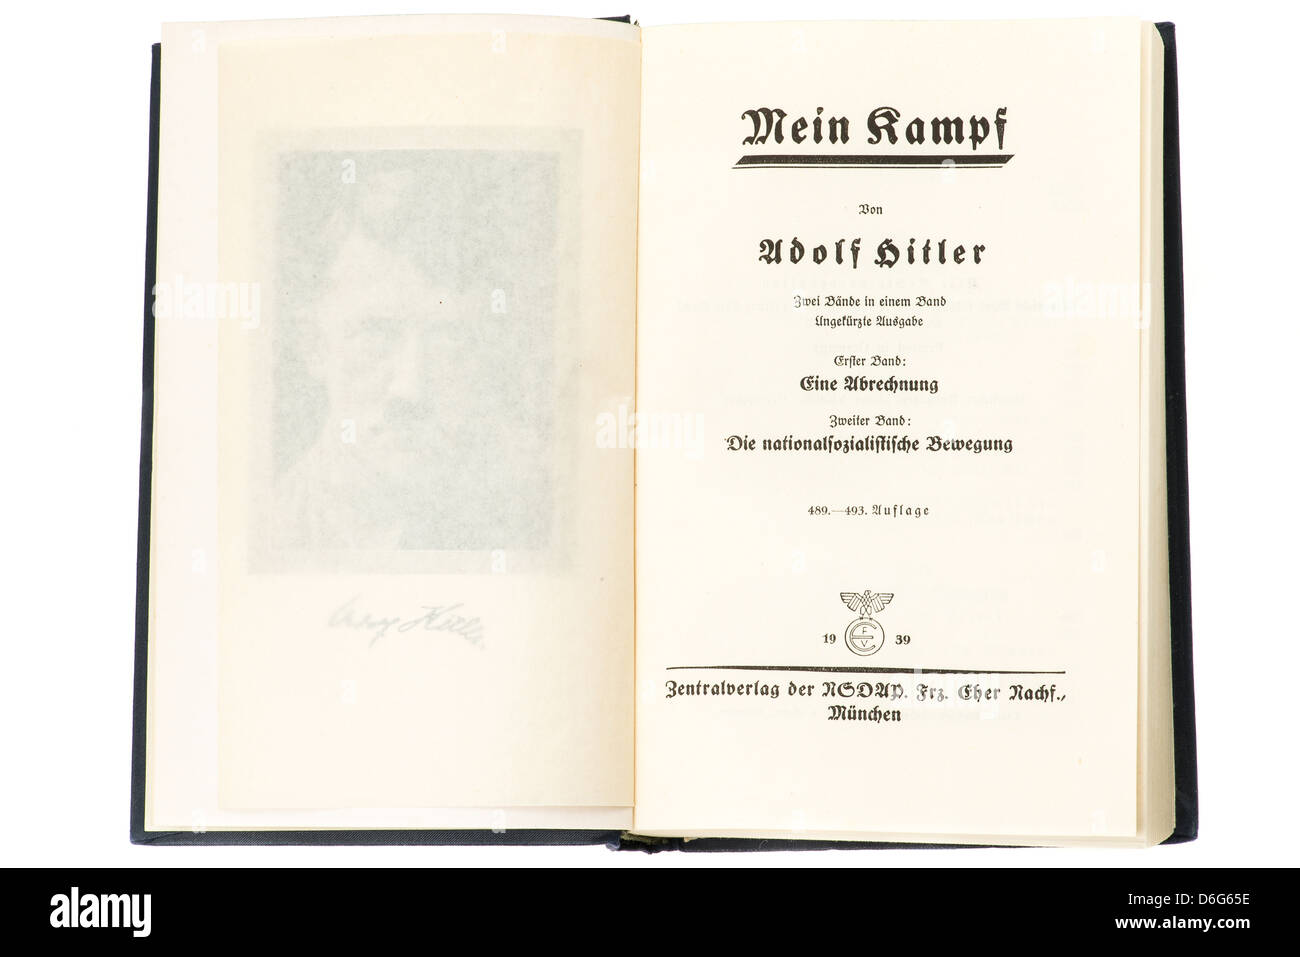 Innenseiten der Hardcover-Buch Mein Kampf von Adolf Hitler ist dies die 1939-Ausgabe. Studio mit einem weißen Hintergrund gedreht. Stockfoto